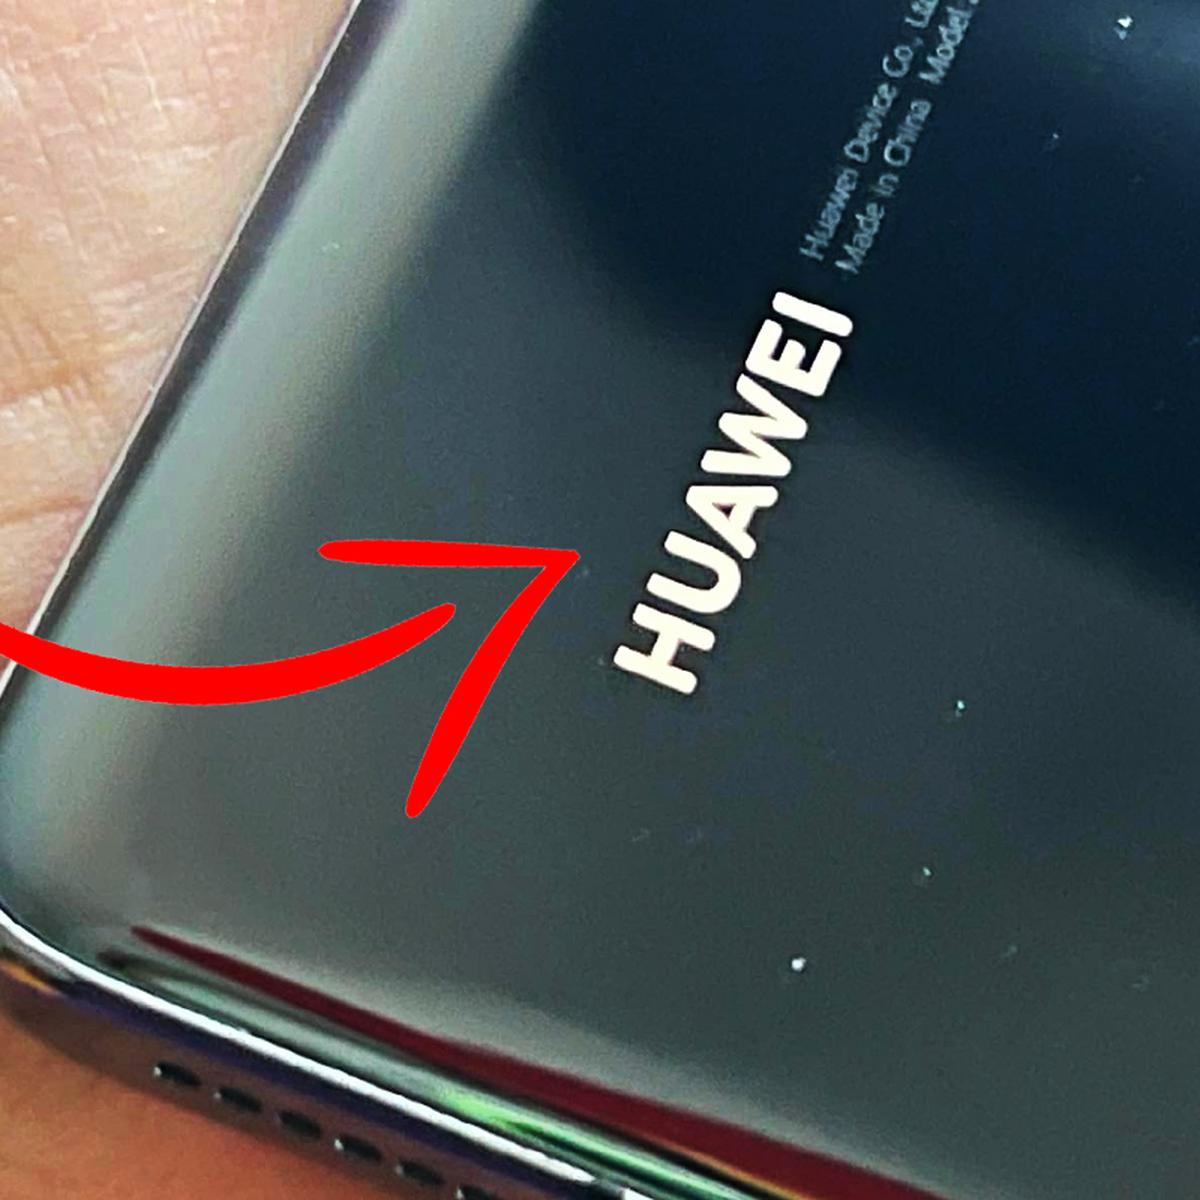 Huawei | Qué significa el nombre de la marca de celulares | China |  Traducción | Meaning | Smartphone | nnda | nnni | DEPOR-PLAY | DEPOR